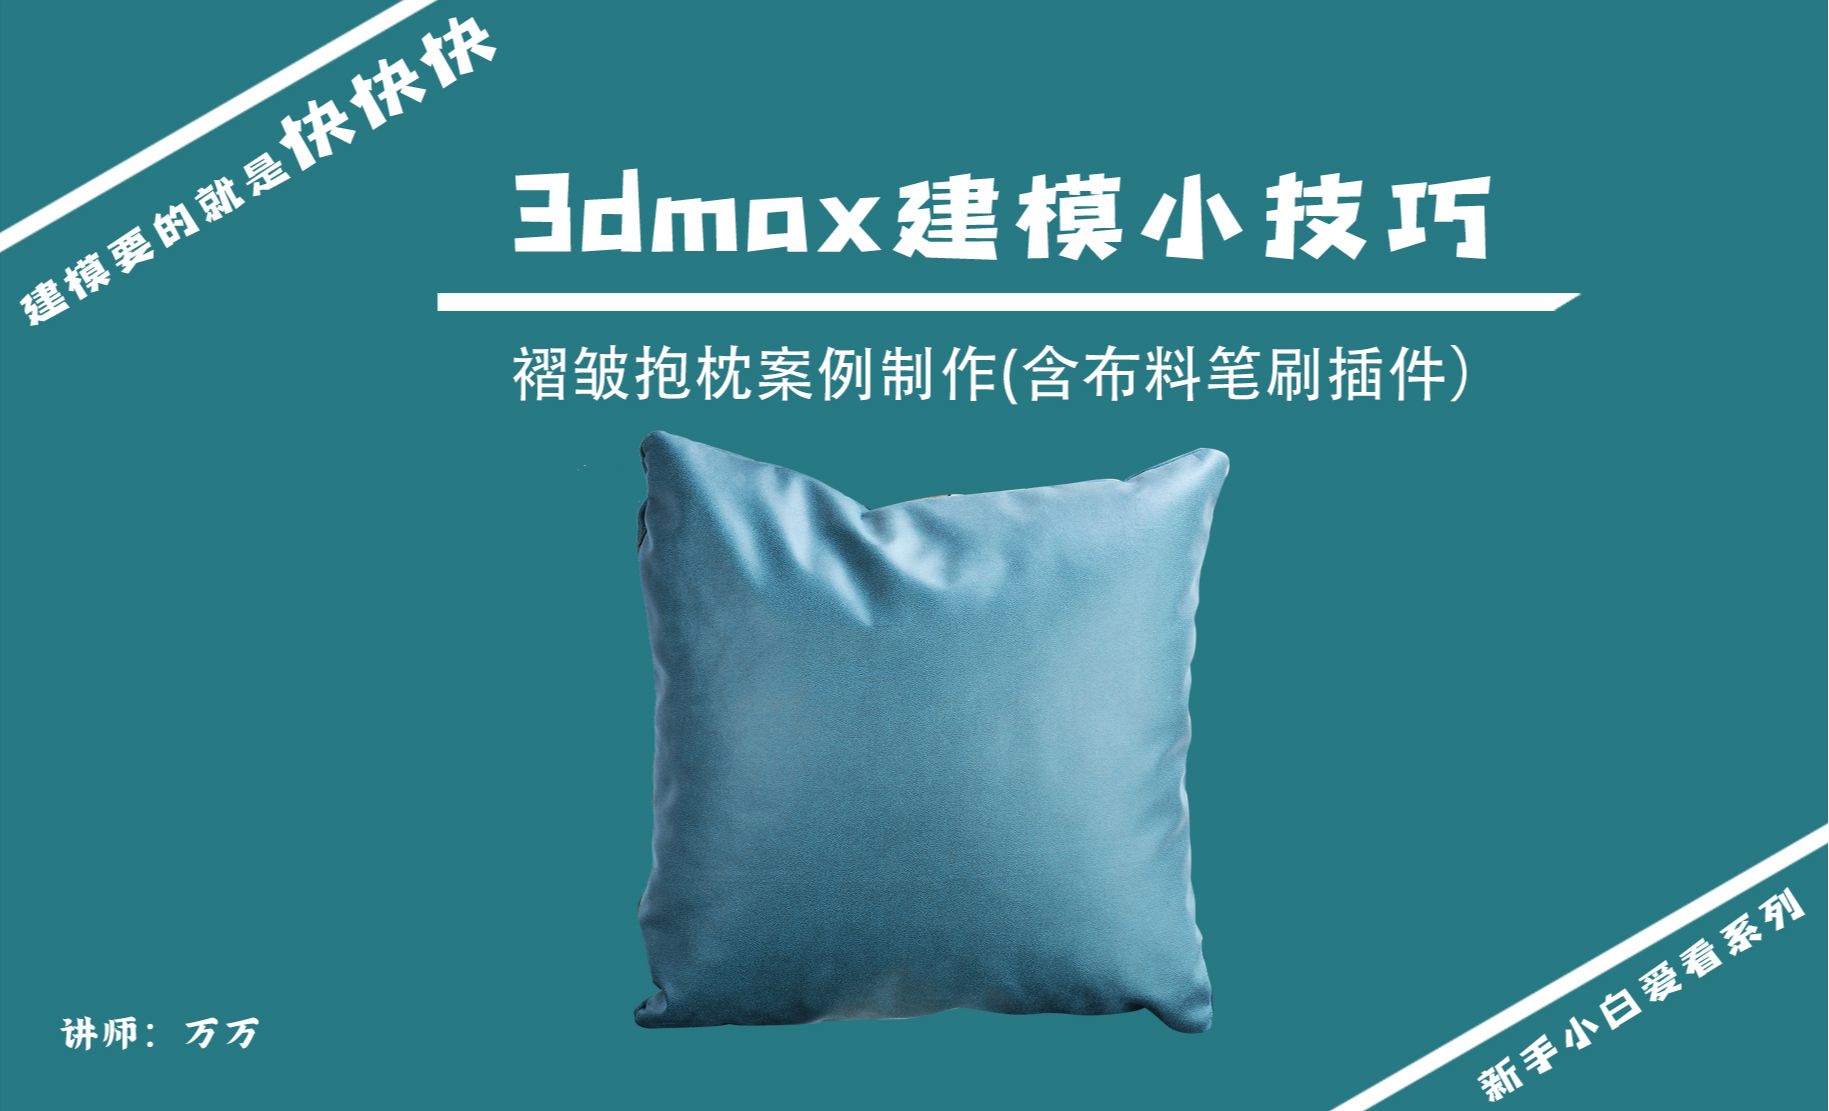 3DMAX-建模小技巧-皱褶的抱枕